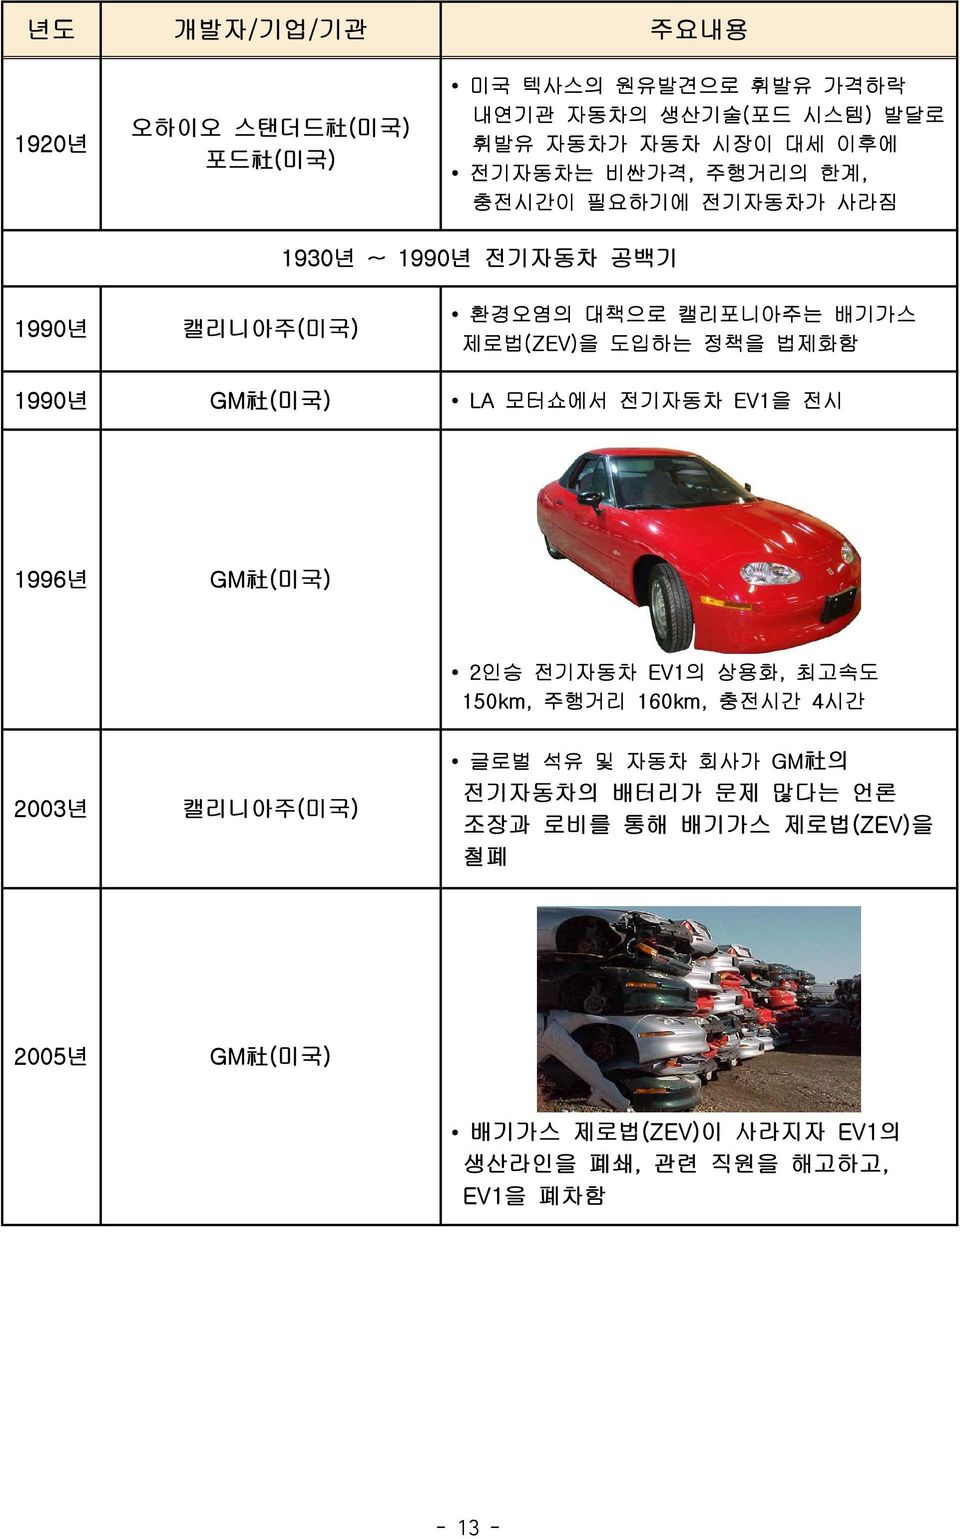 GM 社 (미국) LA 모터쇼에서 전기자동차 EV1을 전시 1996년 GM 社 (미국) 2인승 전기자동차 EV1의 상용화, 최고속도 150km, 주행거리 160km, 충전시간 4시간 2003년 캘리니아주(미국) 글로벌 석유 및 자동차 회사가